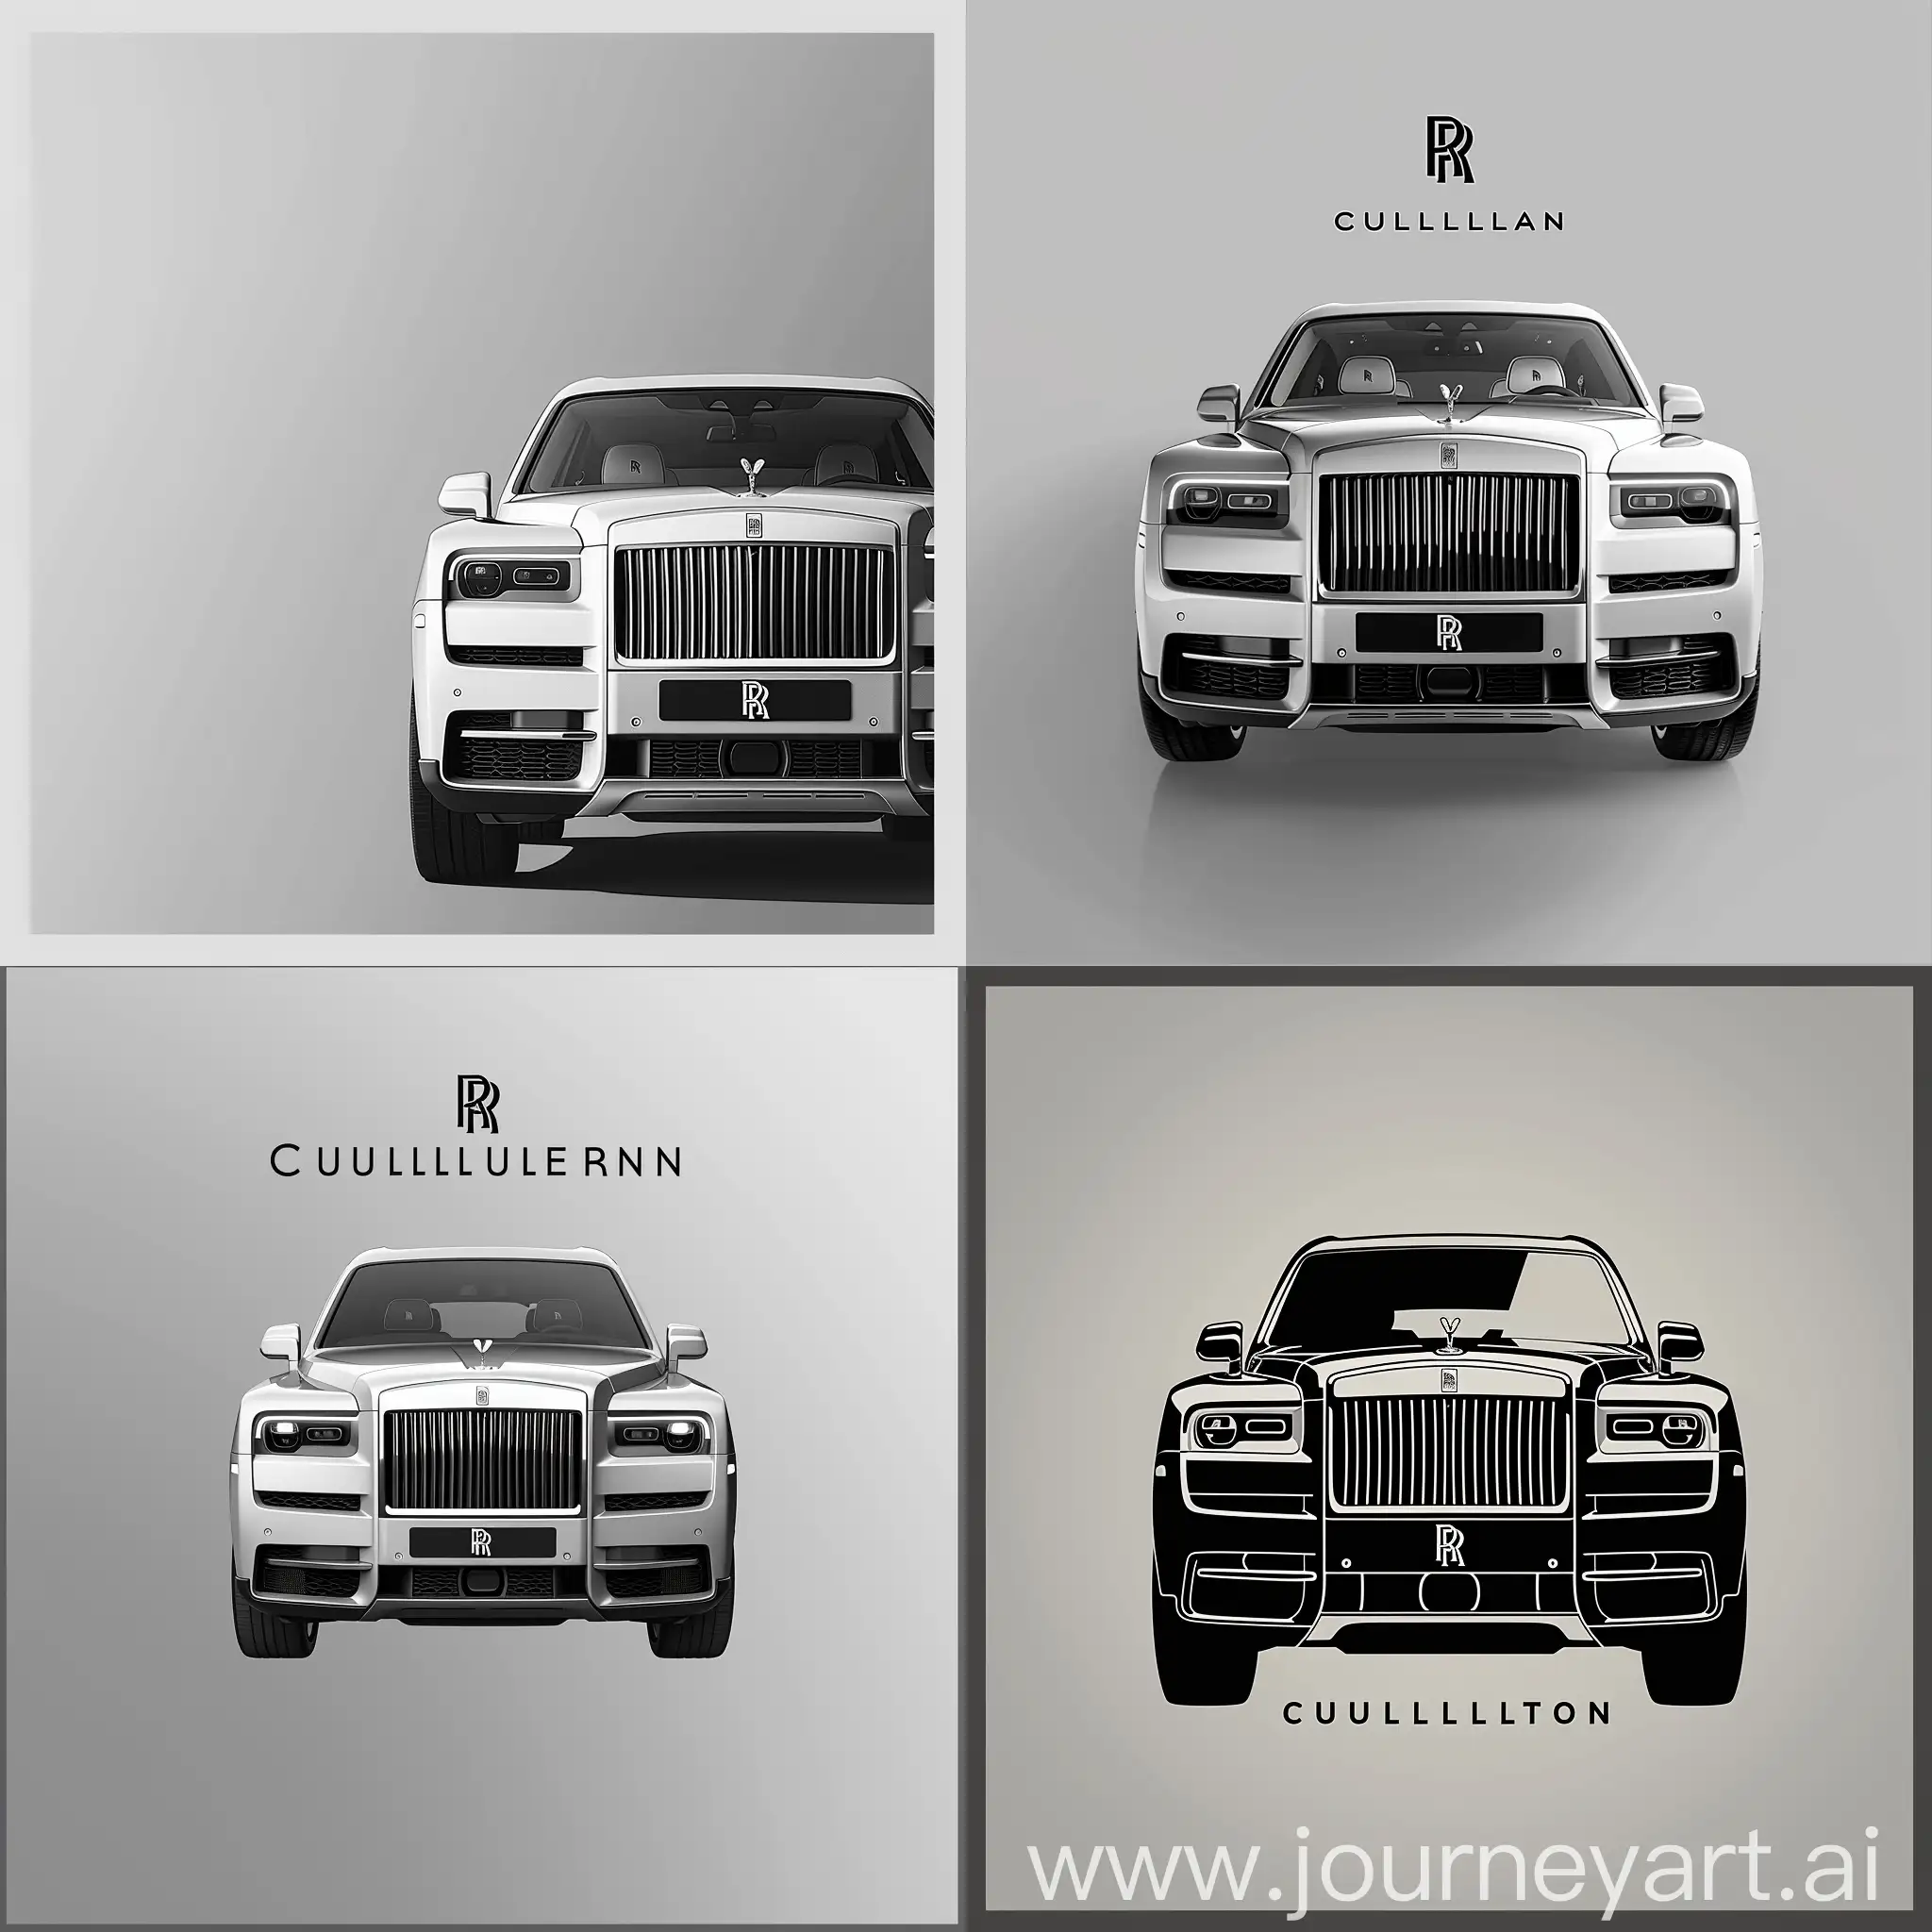 2D Минималистический логотип, градиентный Серо-белый фон. Изображен Rolls Royce Cullinan